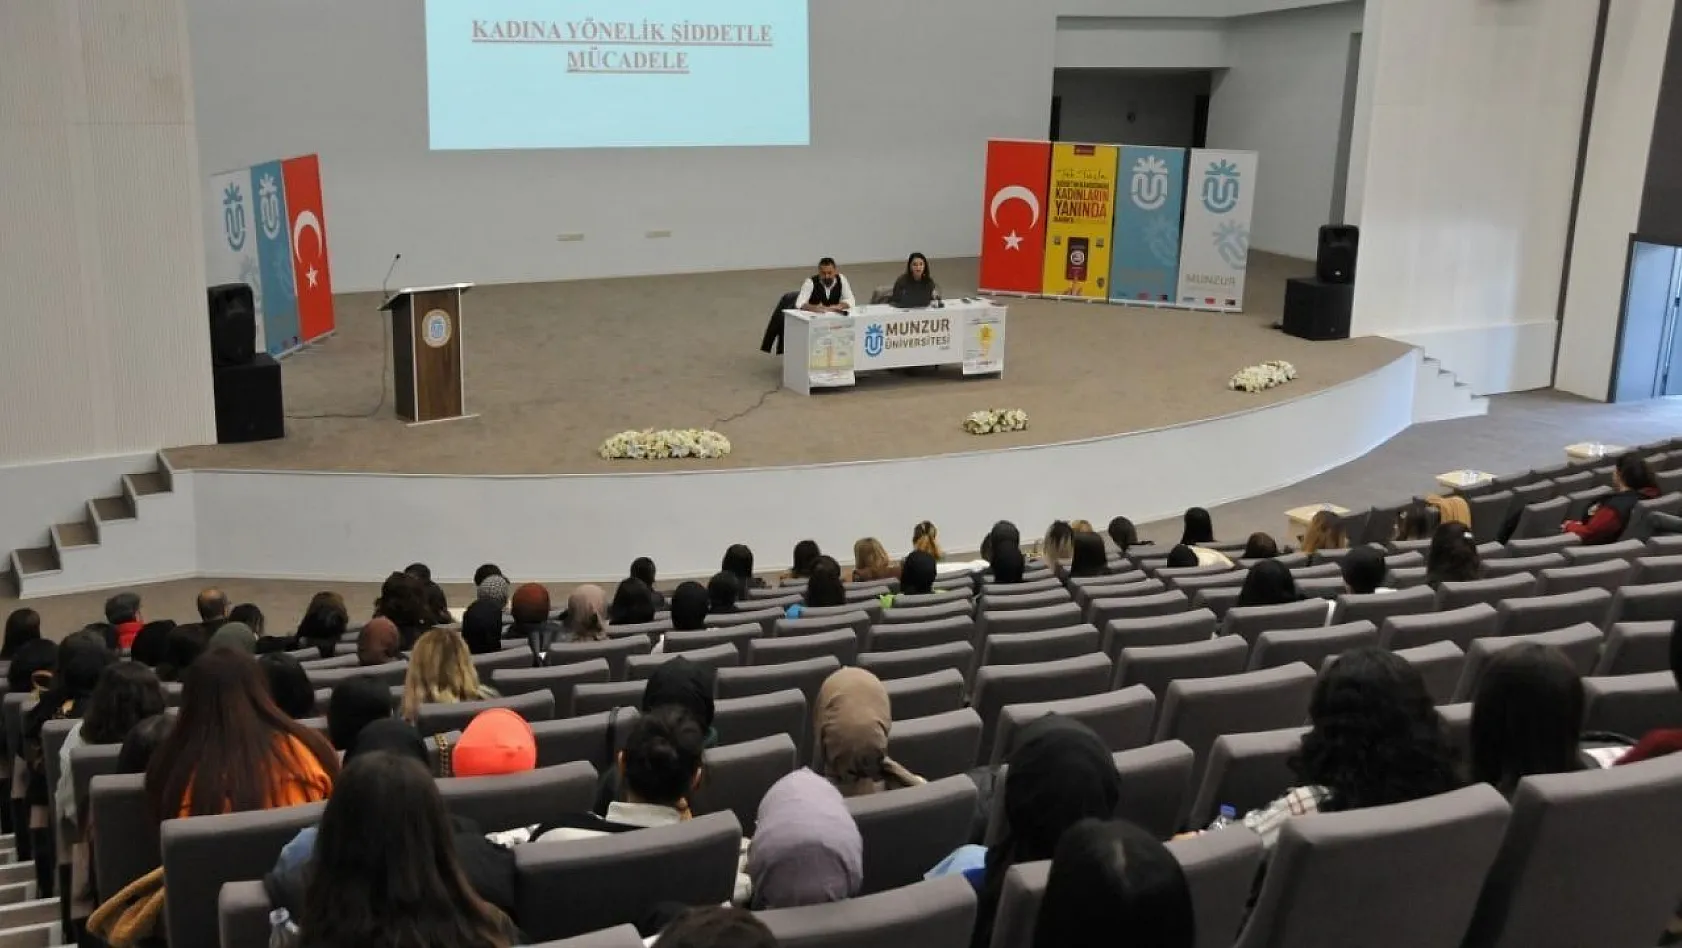 Munzur Üniversitesi'nden Kadın Yönelik Şiddetle Mücadele semineri